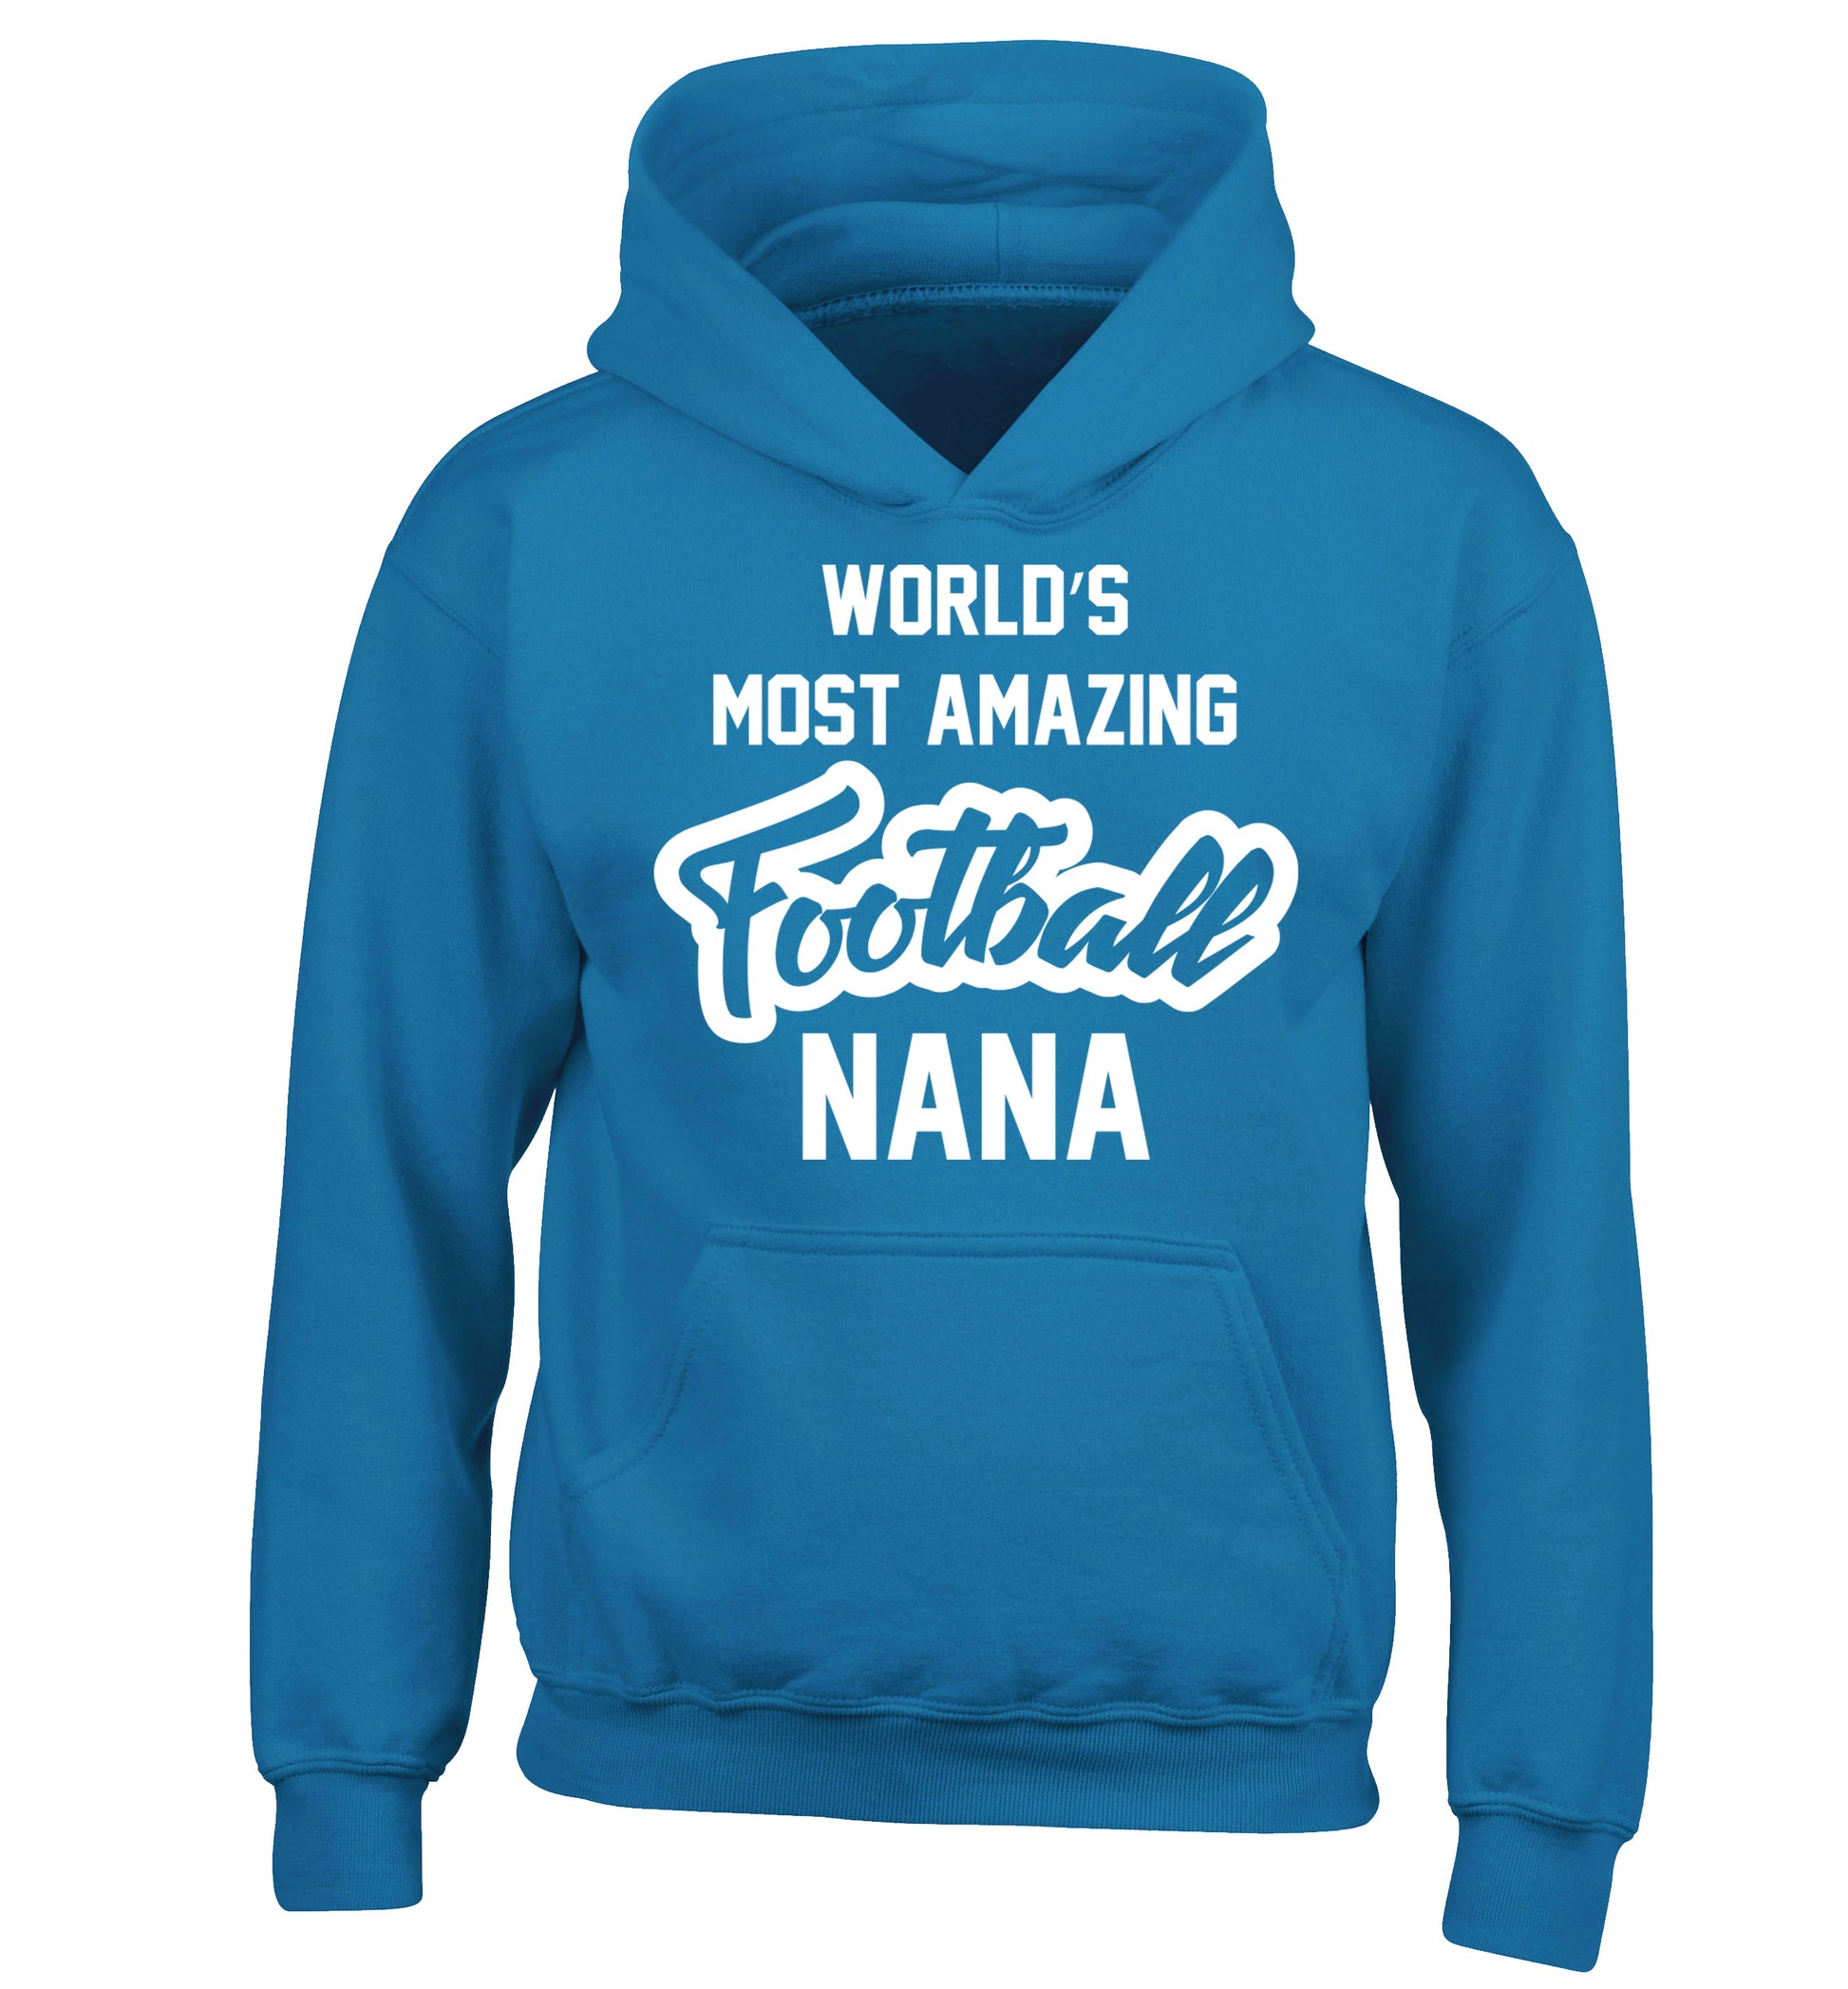 Worlds most amazing football nana children's blue hoodie 12-14 Years